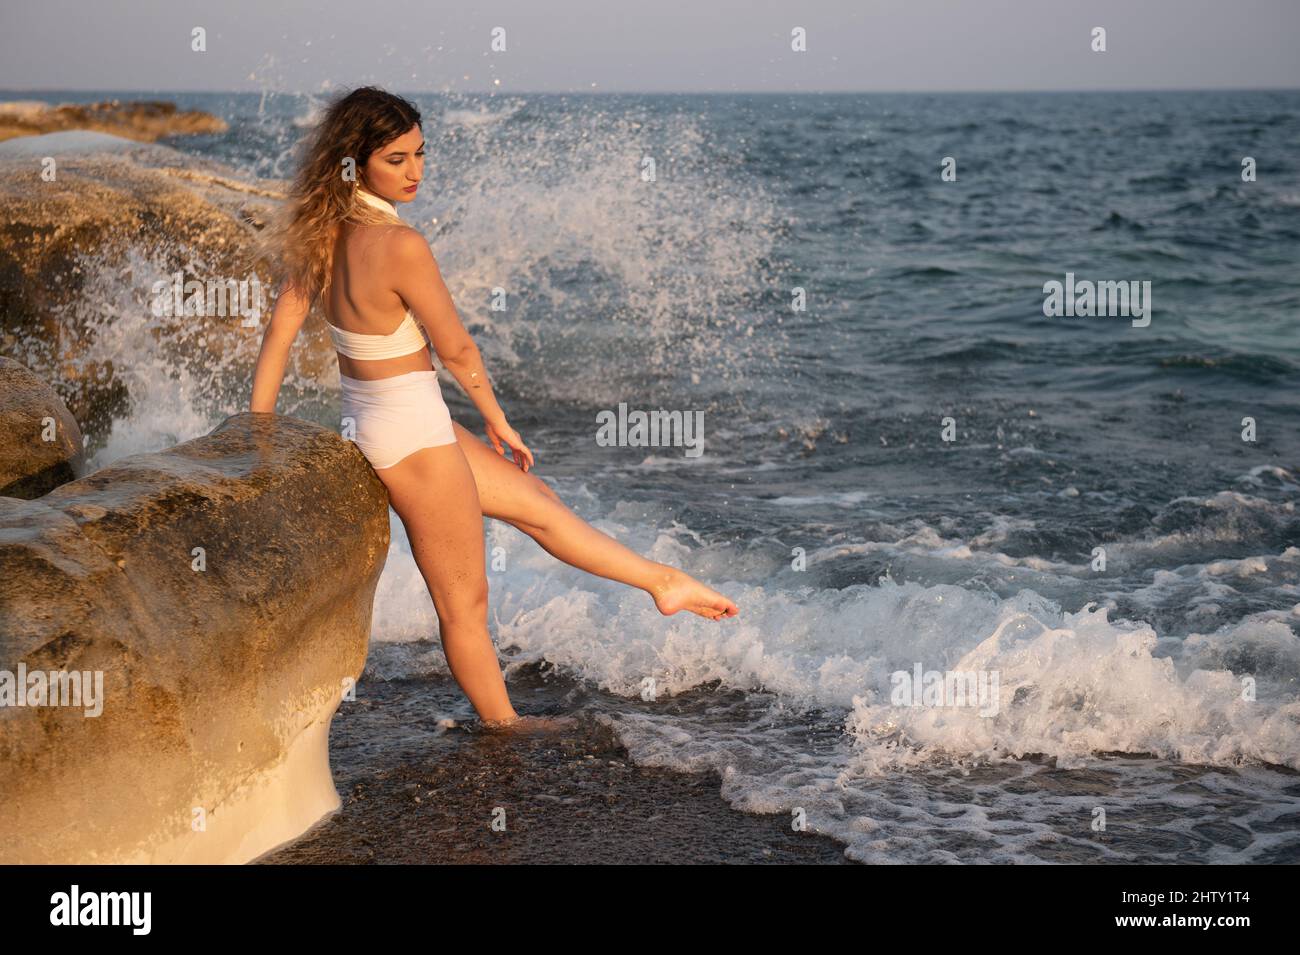 Jeune femme portant un maillot de bain blanc jouant dans l'eau à la plage.  Coucher de soleil sur la mer Photo Stock - Alamy